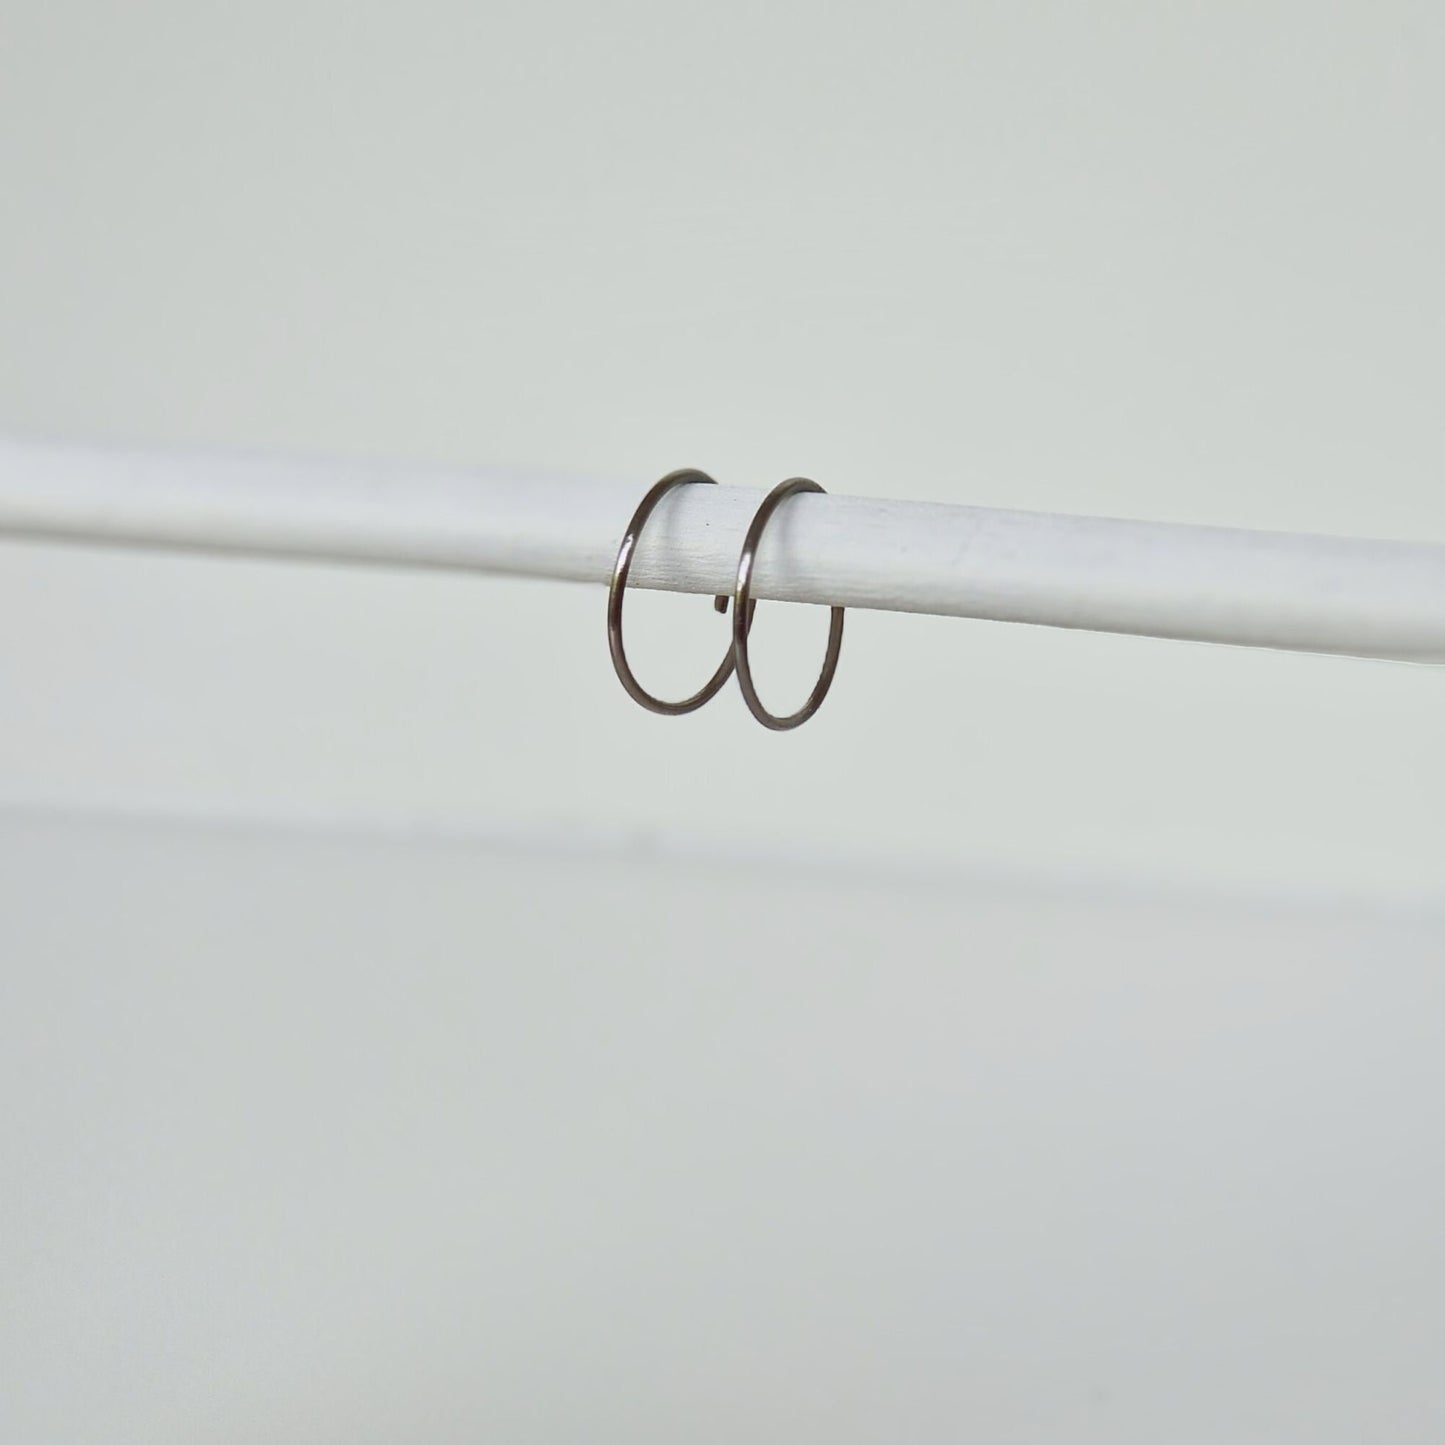 Extra Small Titanium Hoop Earrings, 0.5 Inch Hoops, Nickel Free Silver Color Hoops, Hypoallergenic Earrings for Sensitive Ears